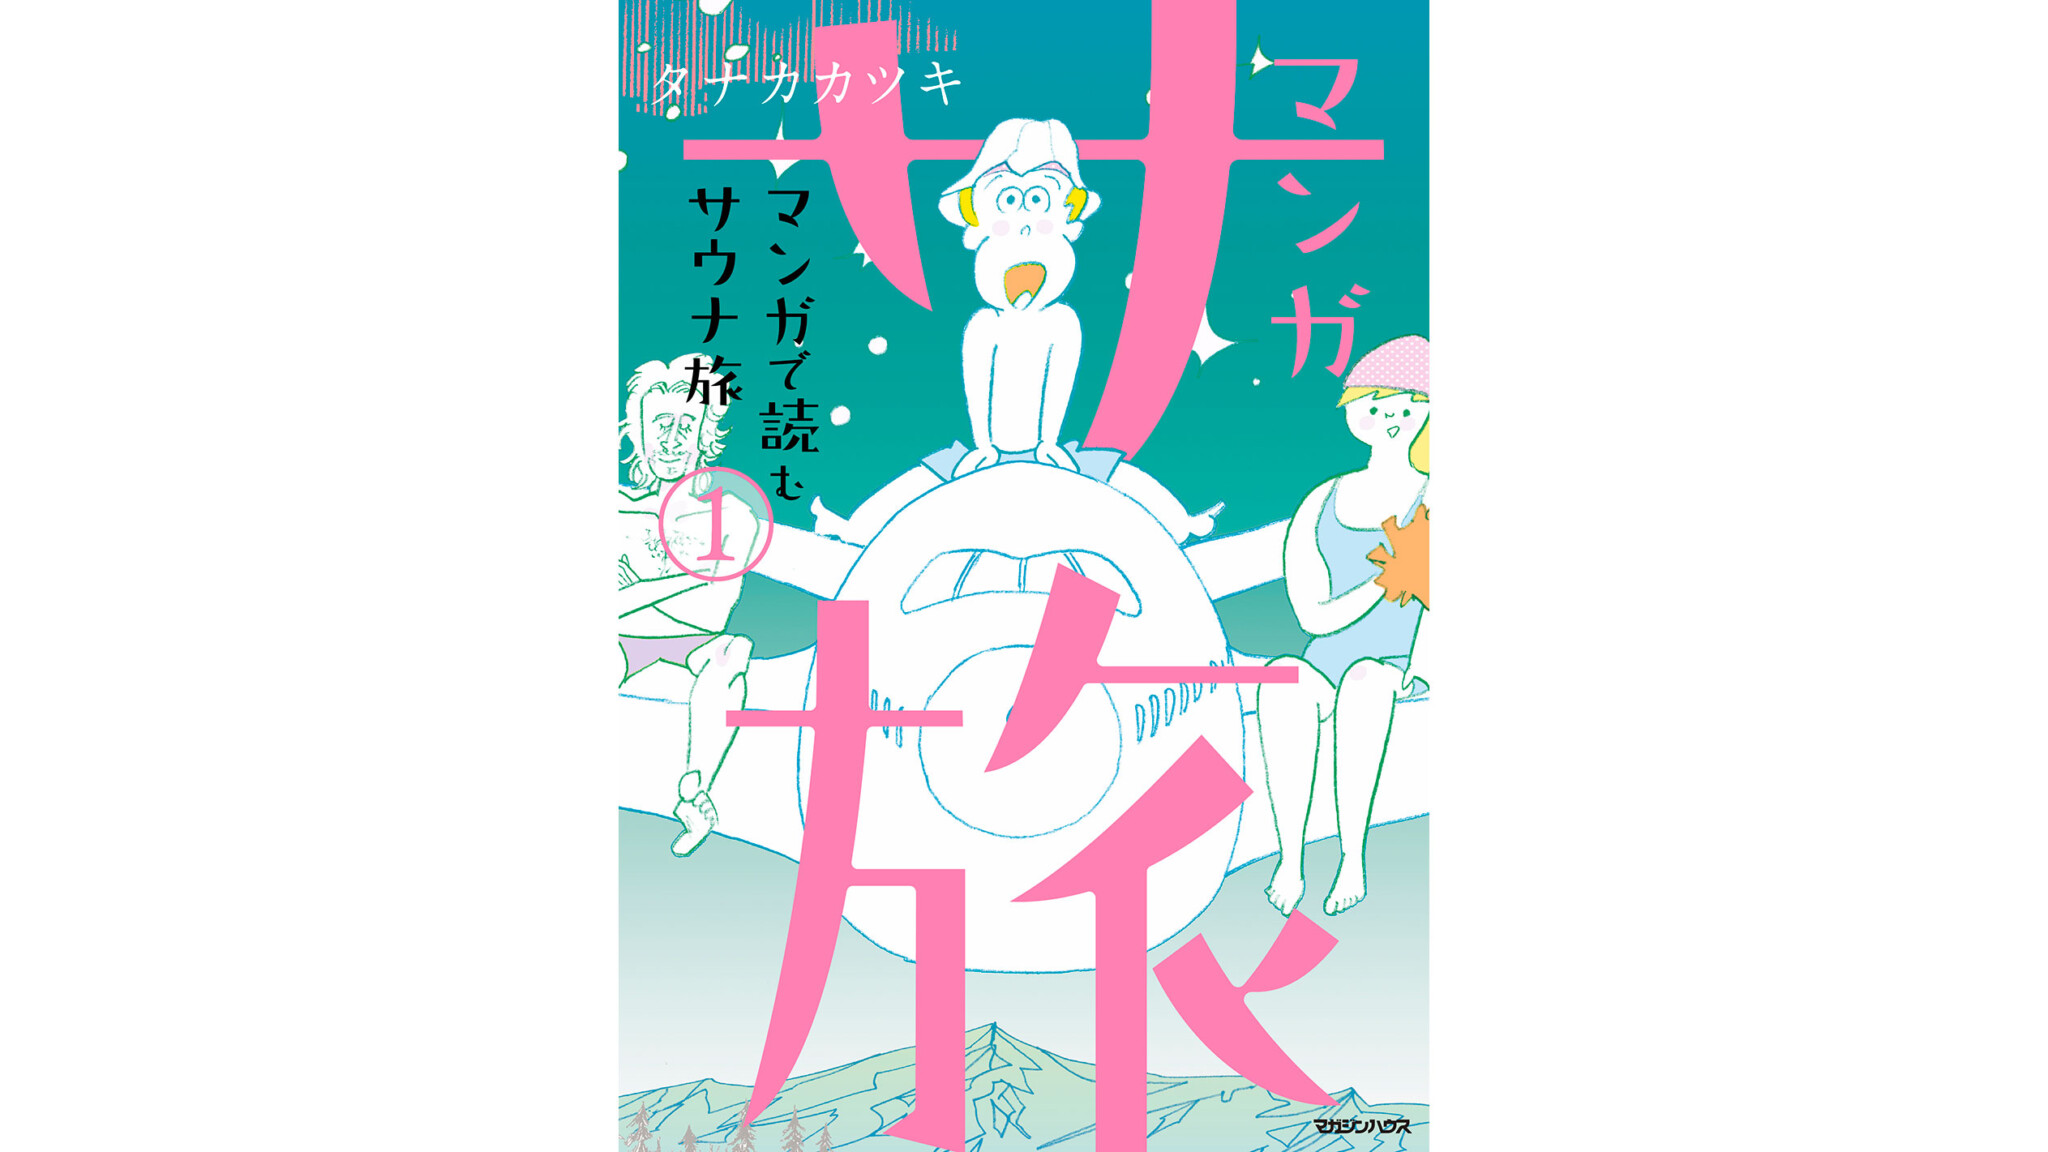 『サ道』作者が新たに描く「サウナ×旅」がテーマの〈マンガ サ旅〉をHanako限定公開！